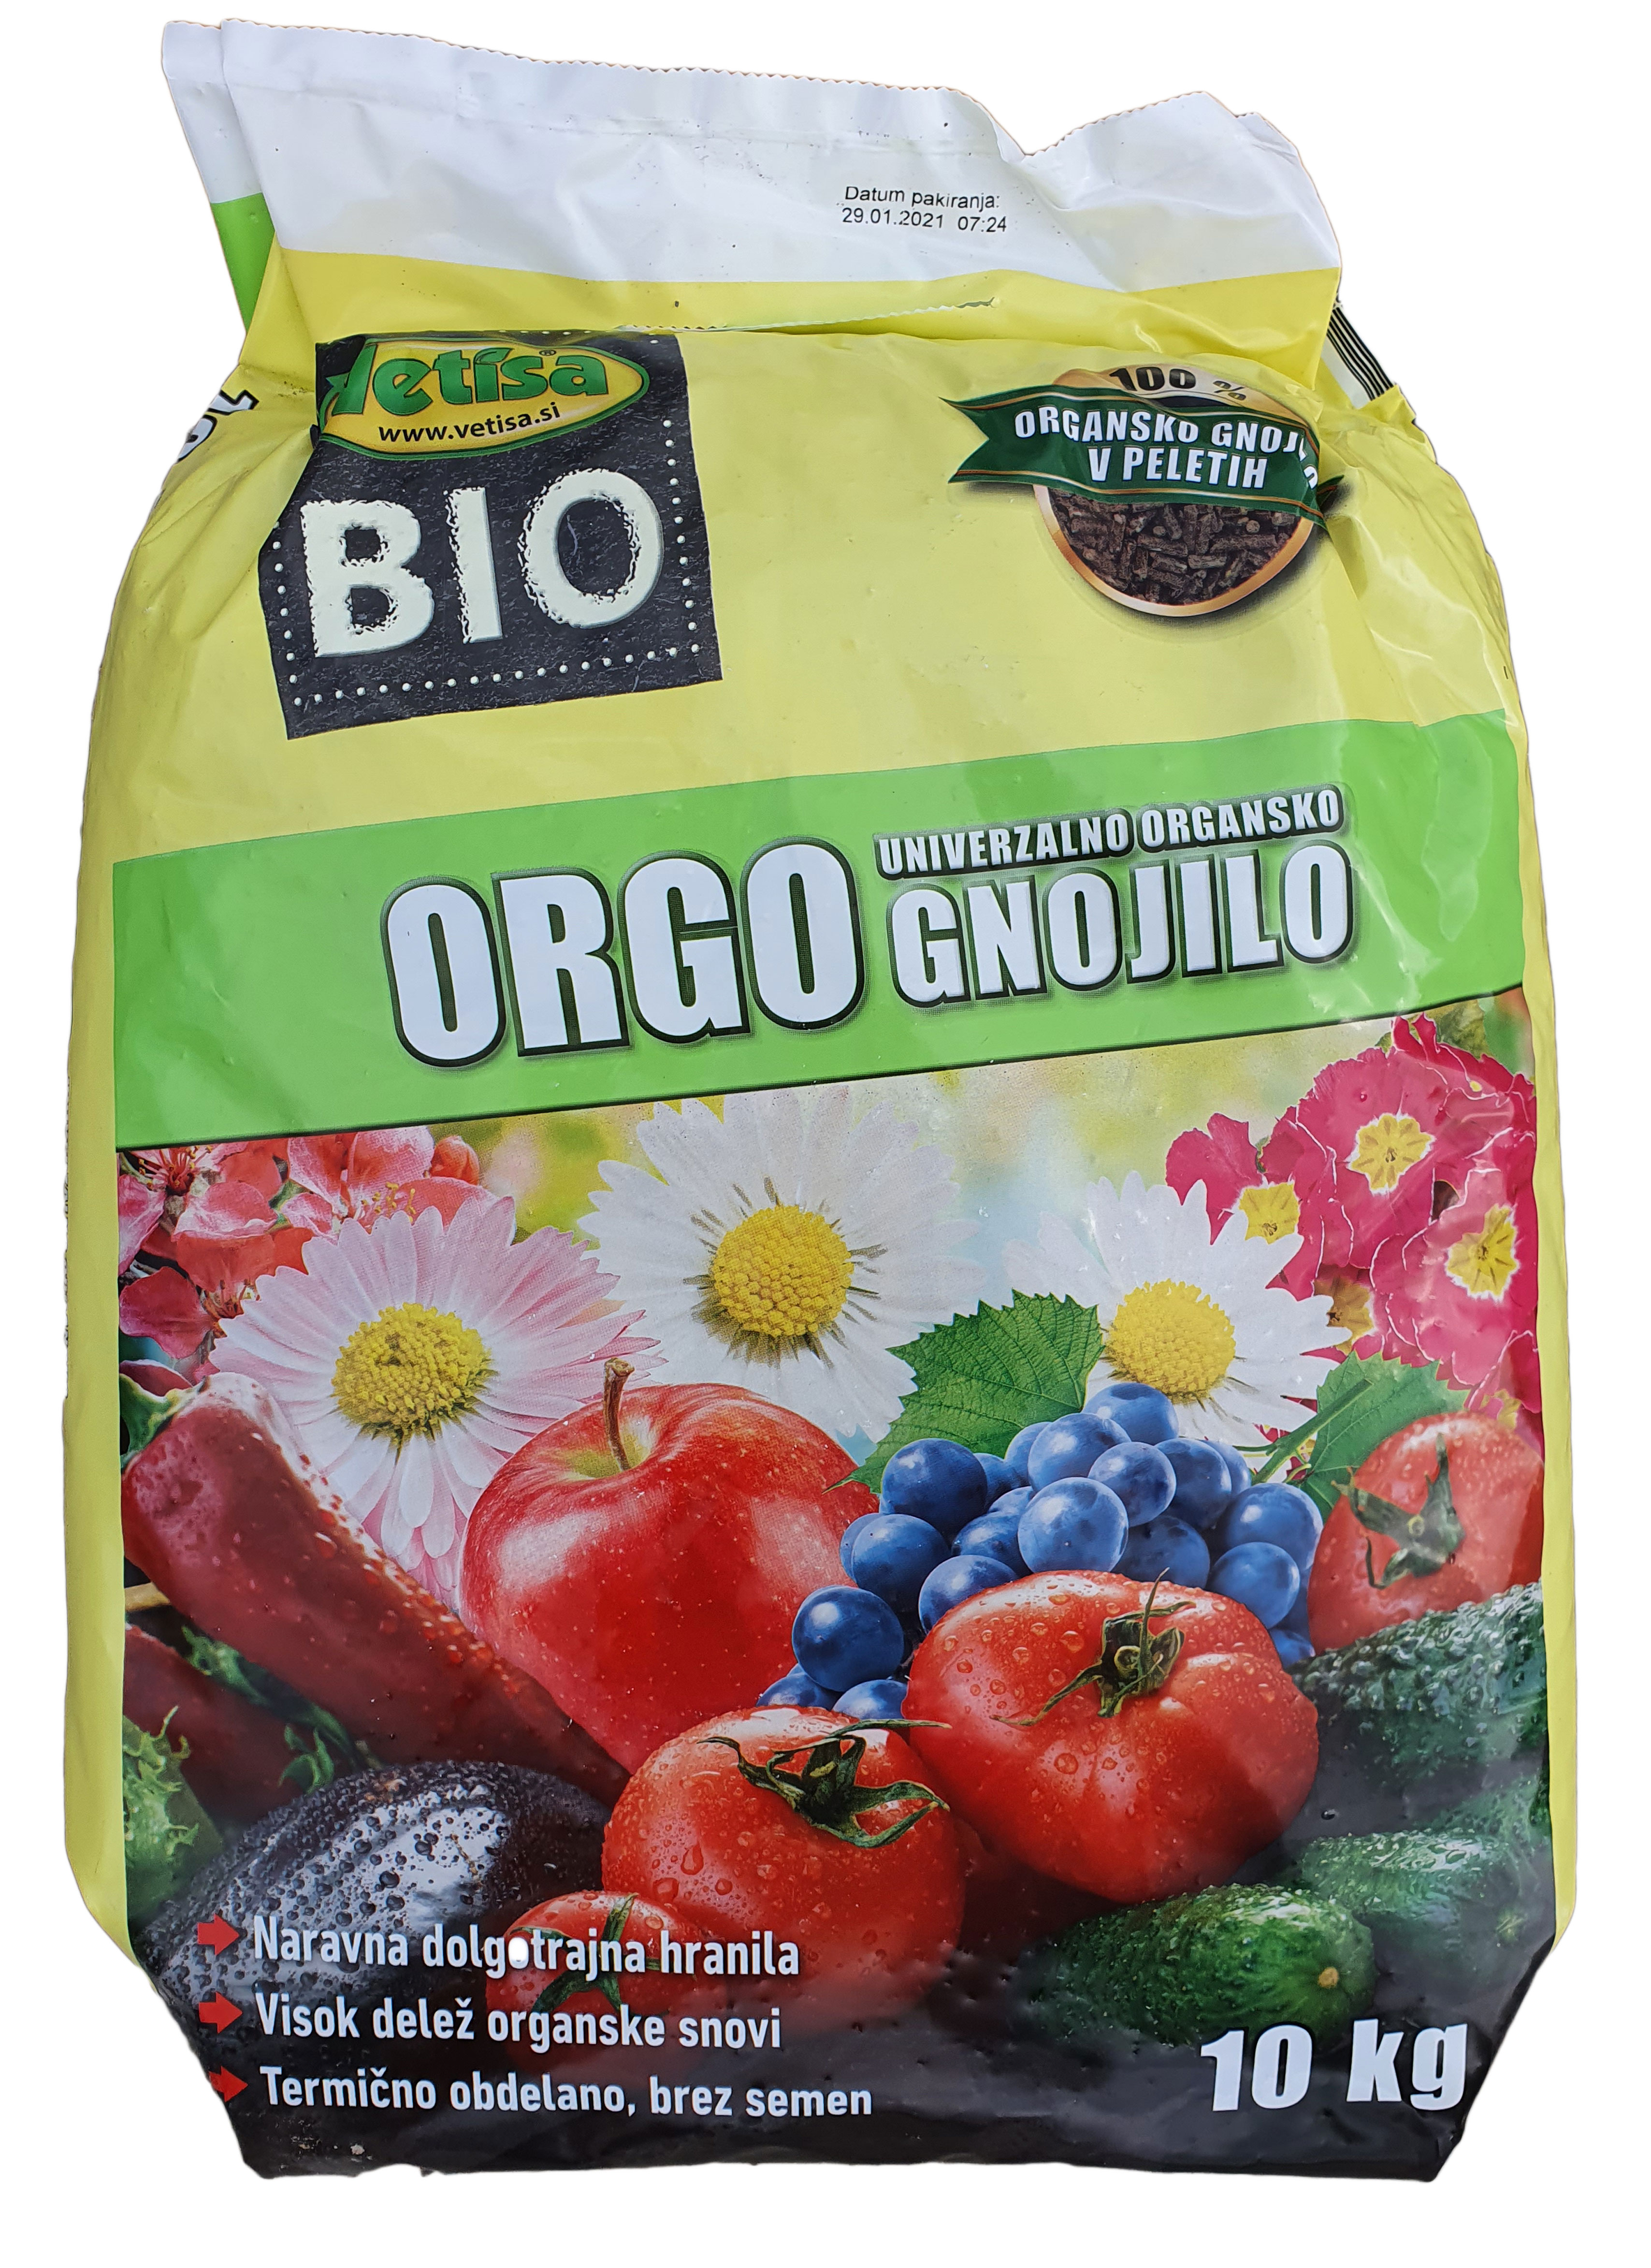 VETISA-ORGO 10 kg- 100% organsko gnojilo za vrt-KAT.2.(60/pal)